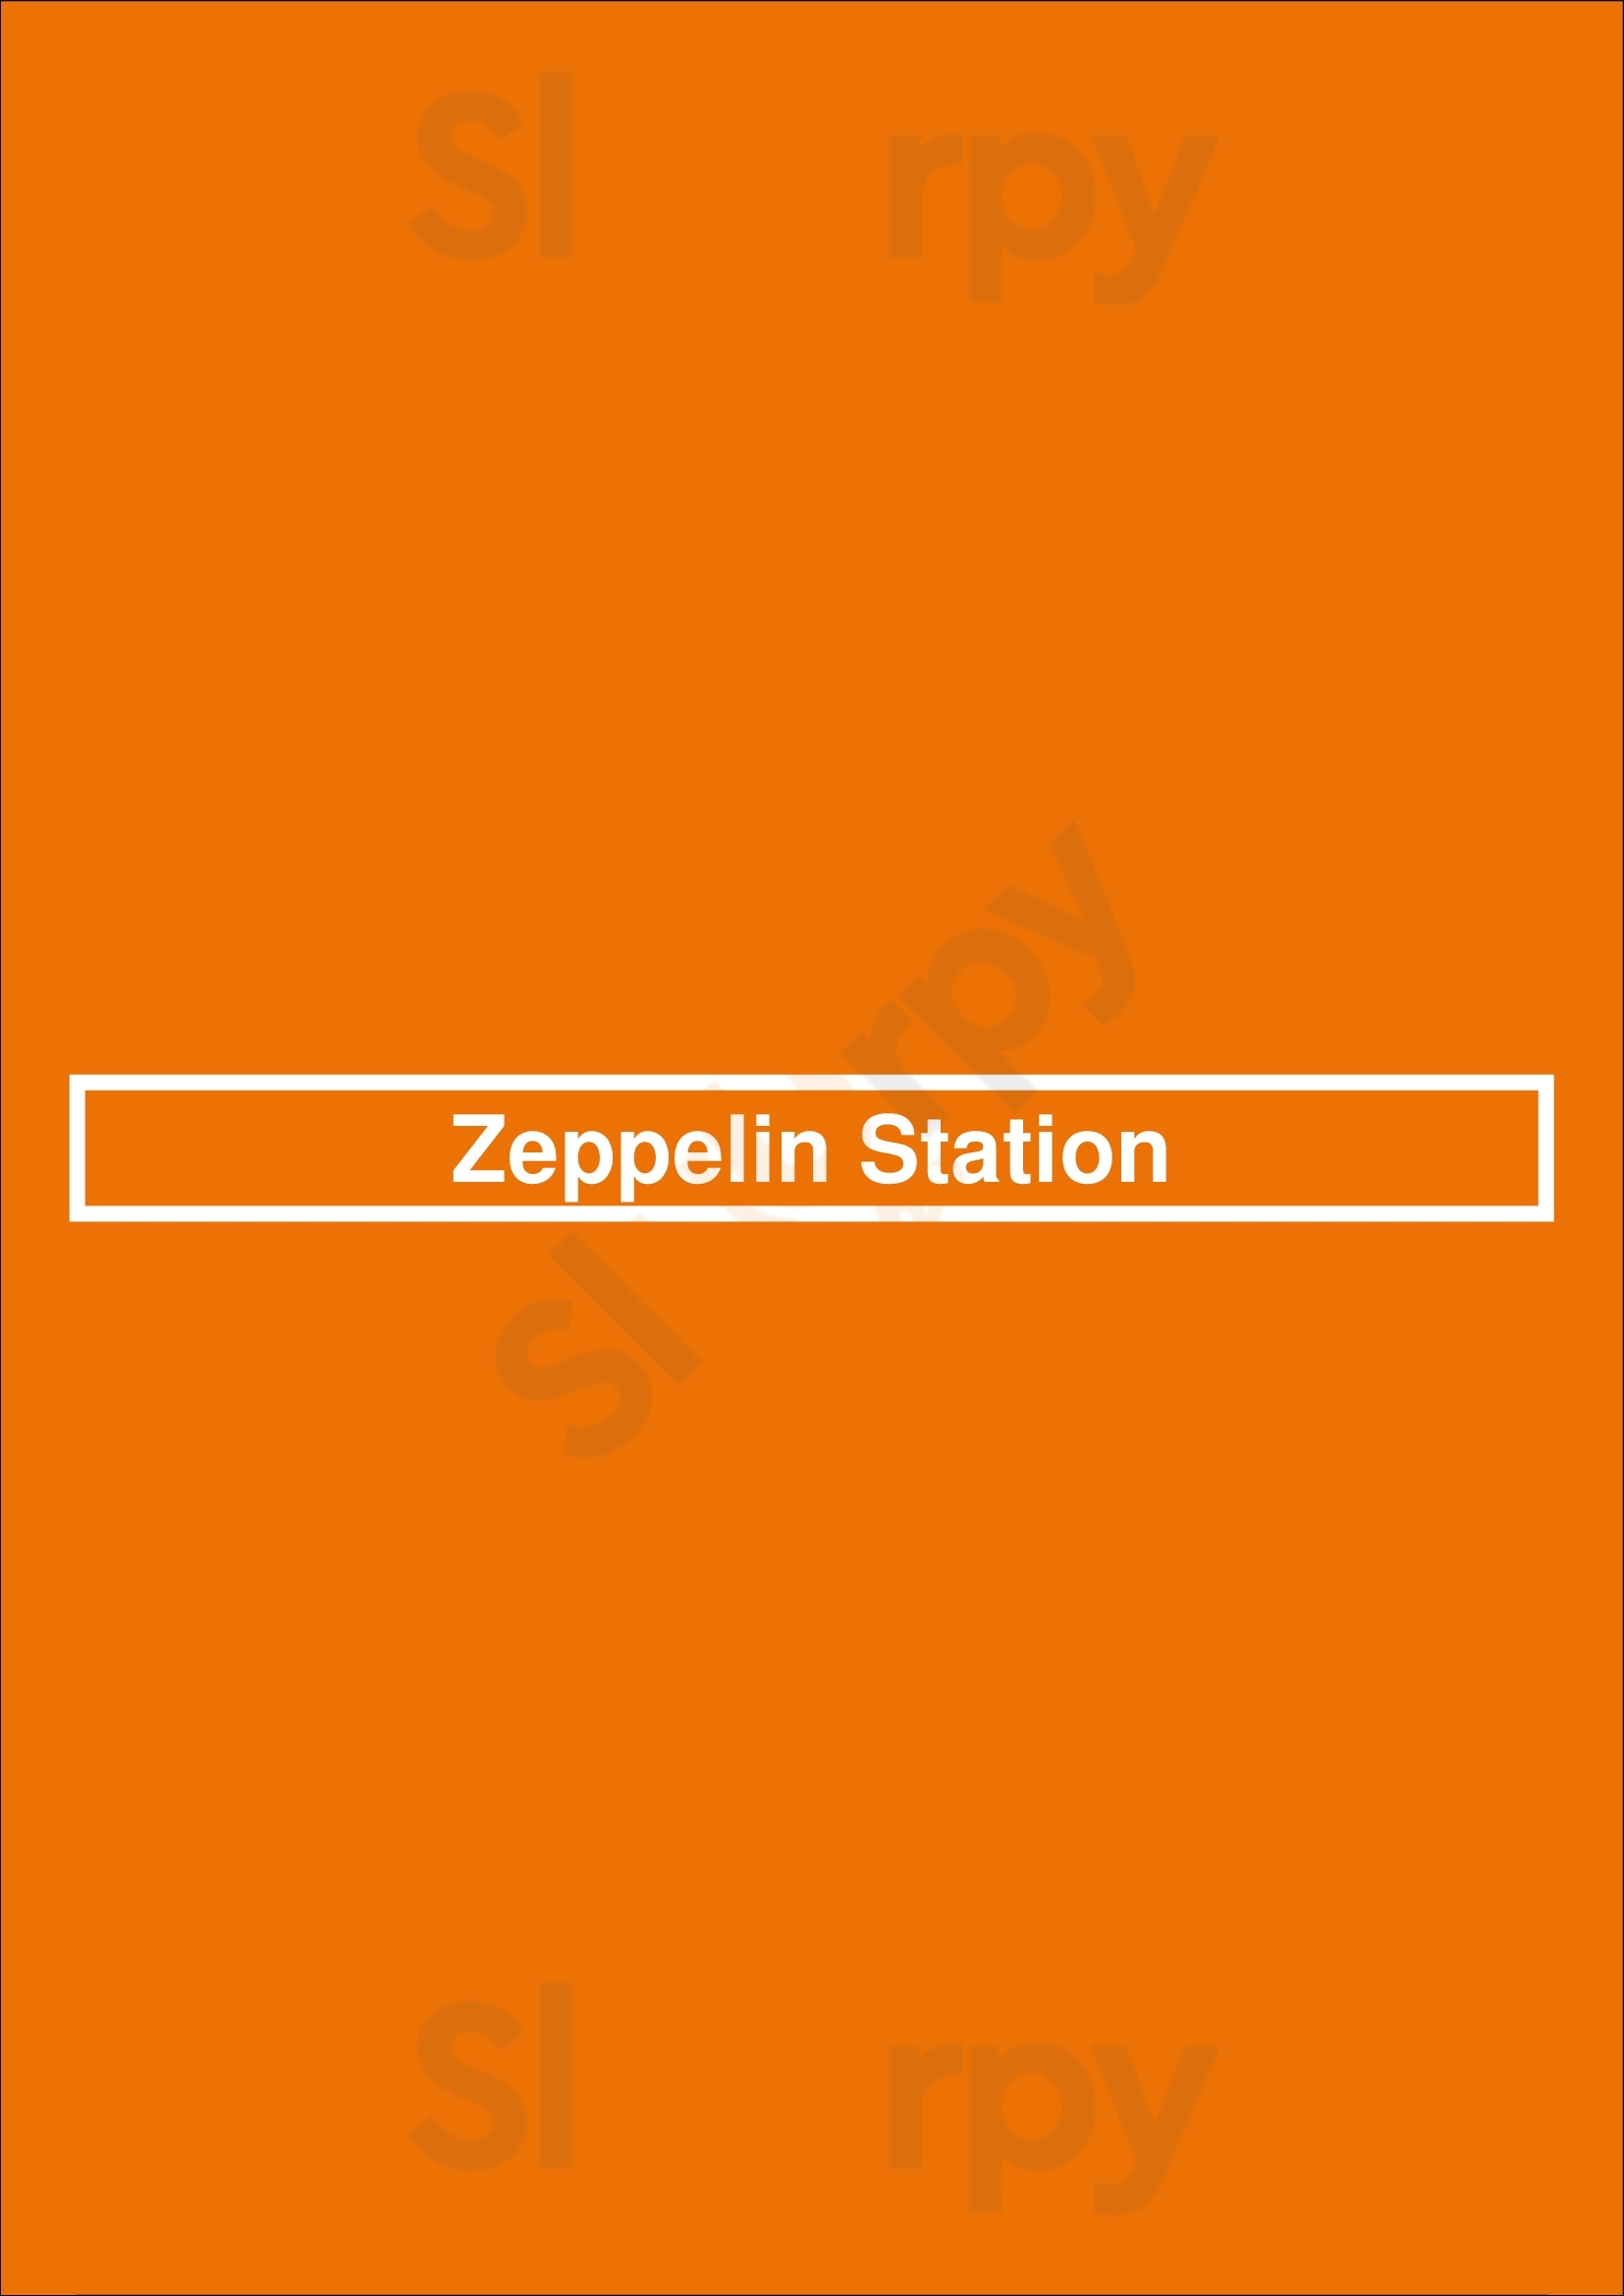 Zeppelin Station Denver Menu - 1